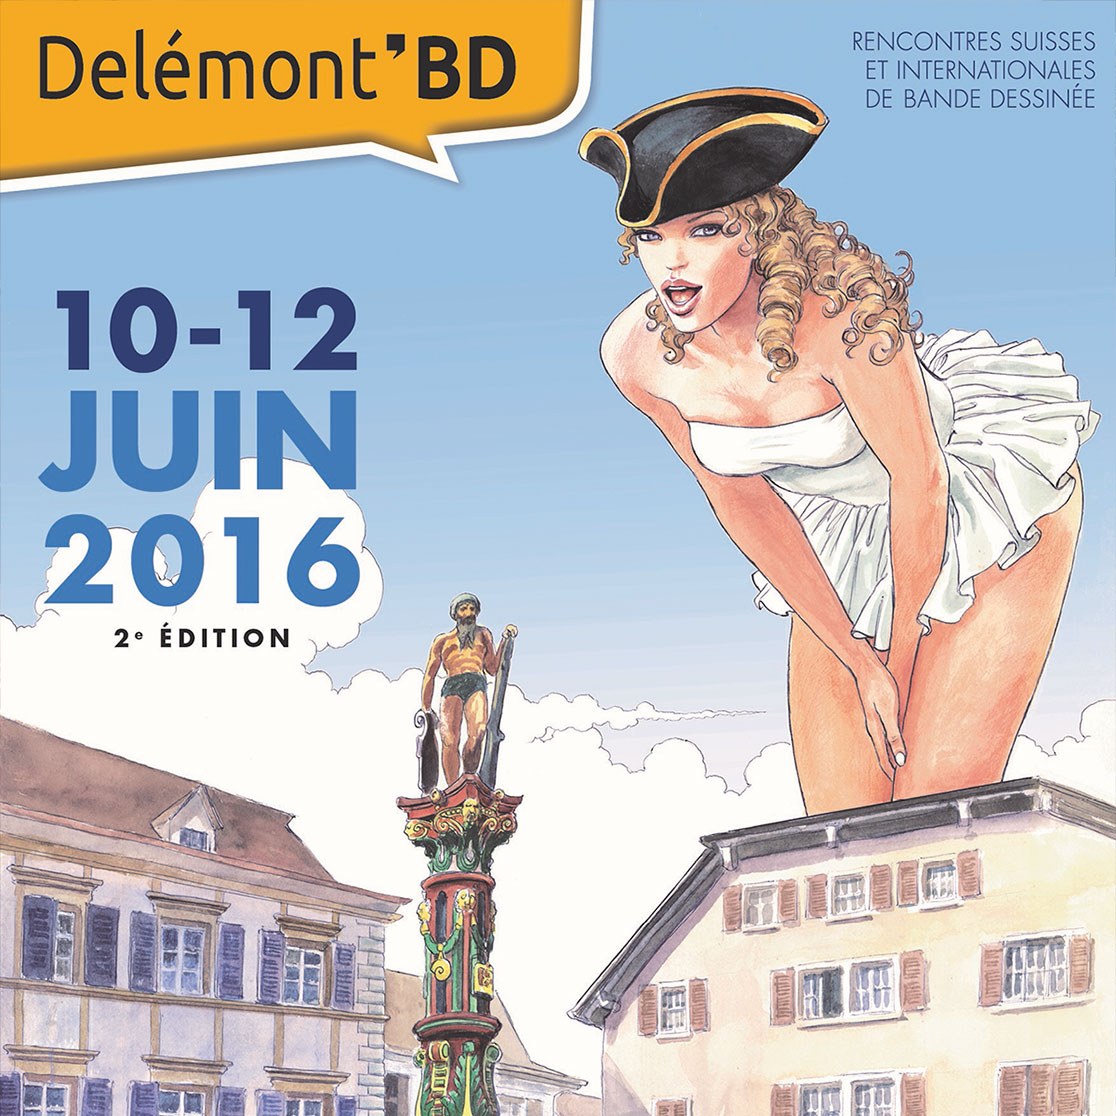 Delémont’BD